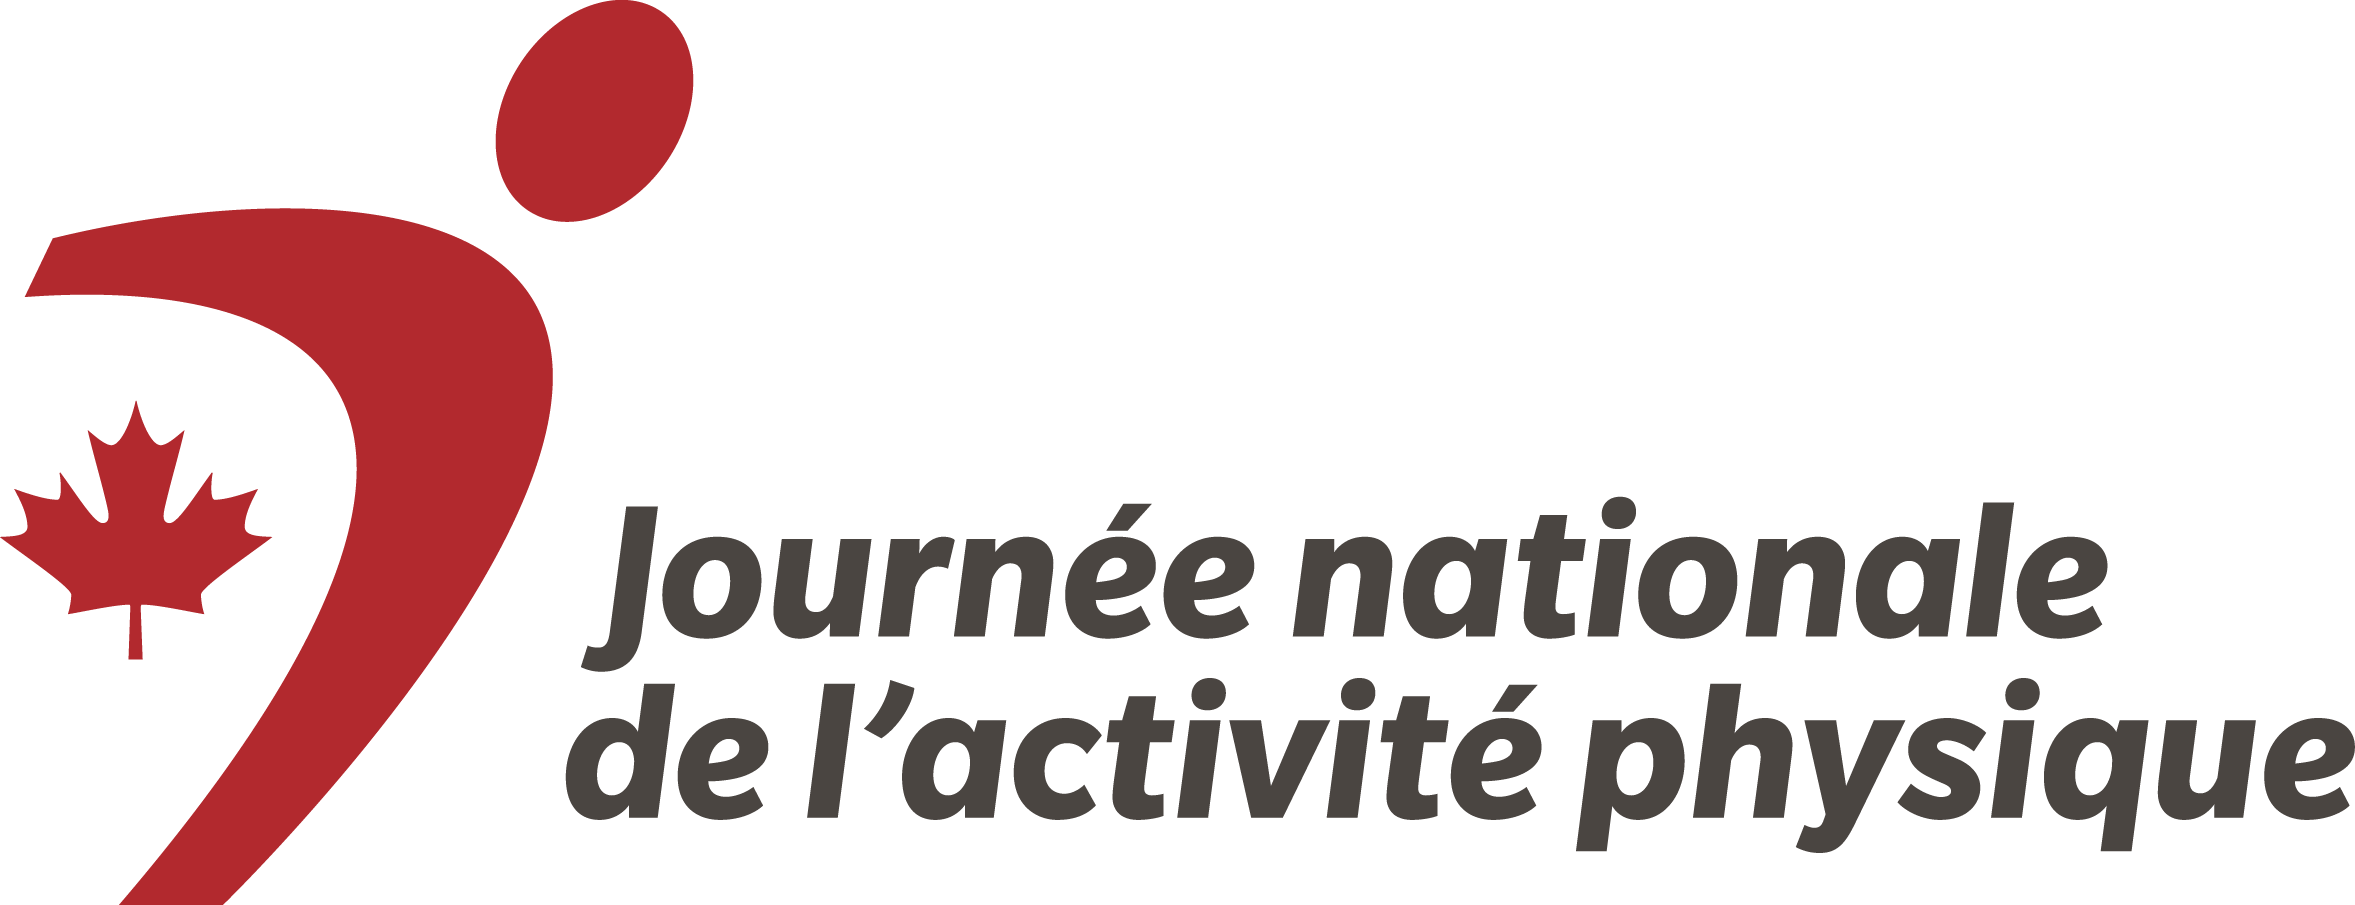 Logo de Journee nationale de l'activite physique